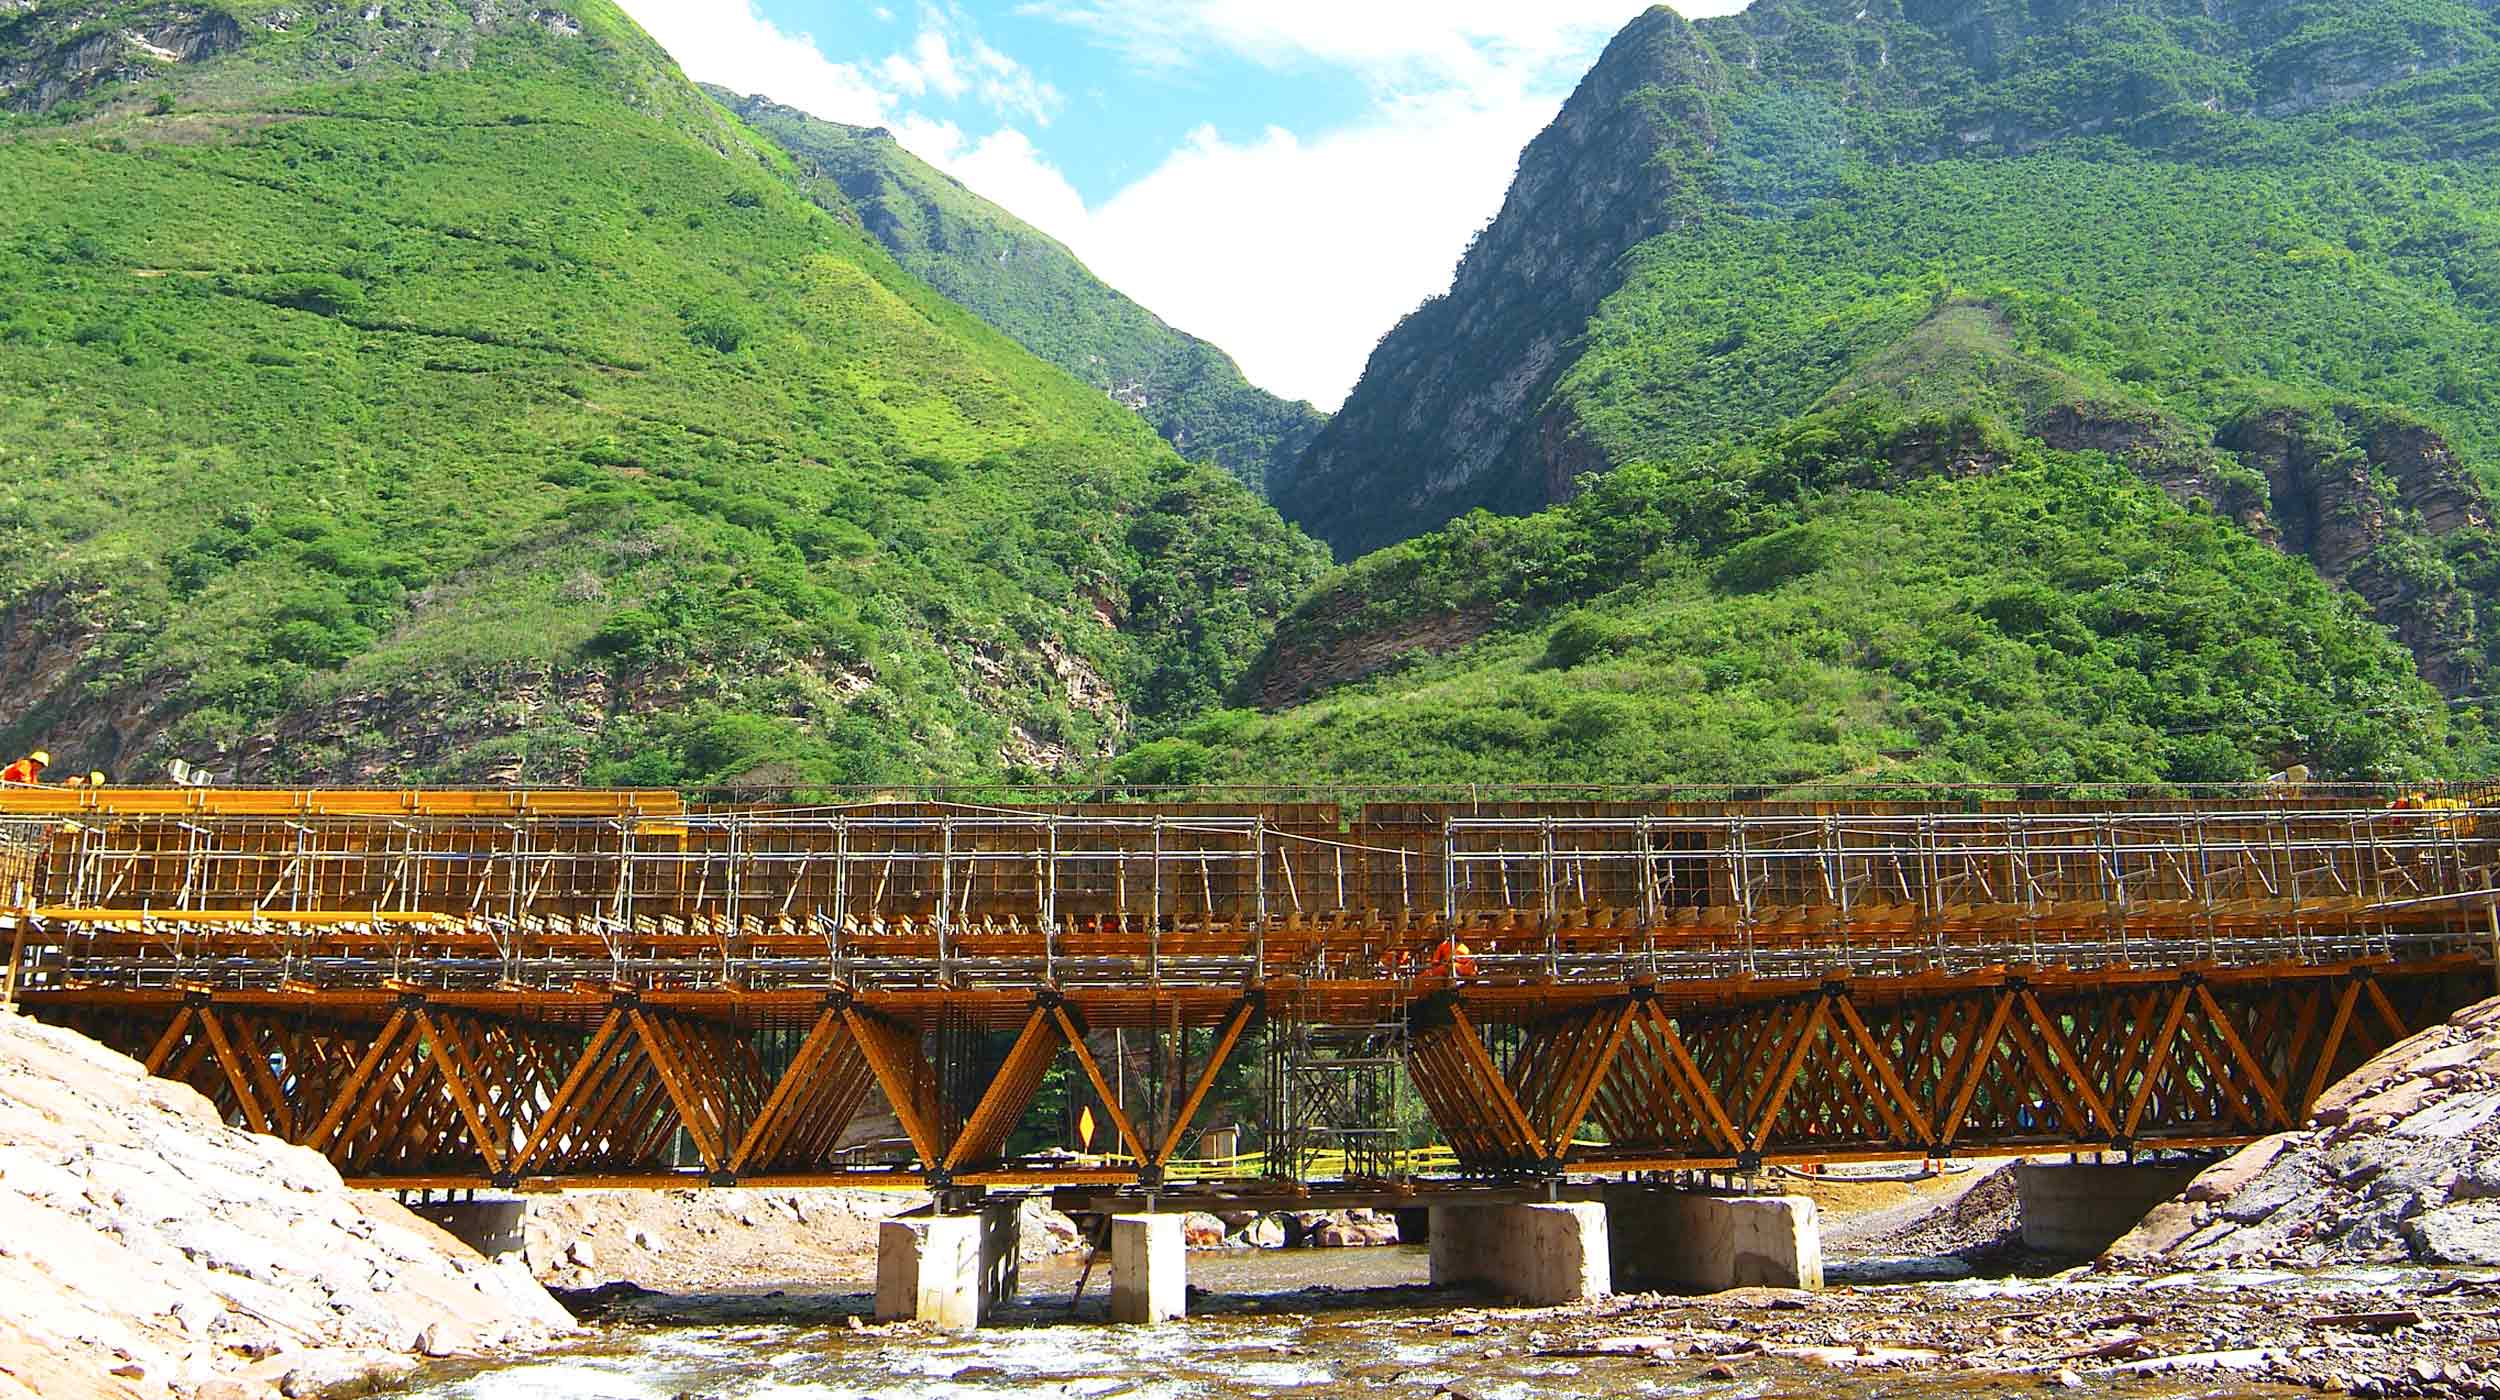 Mesurant 40 m de long et 9,4 m de large, le pont Tingo se situe dans la région amazonienne de Bagua Grande, sur la route interocéanique nord, longue de 900 km.